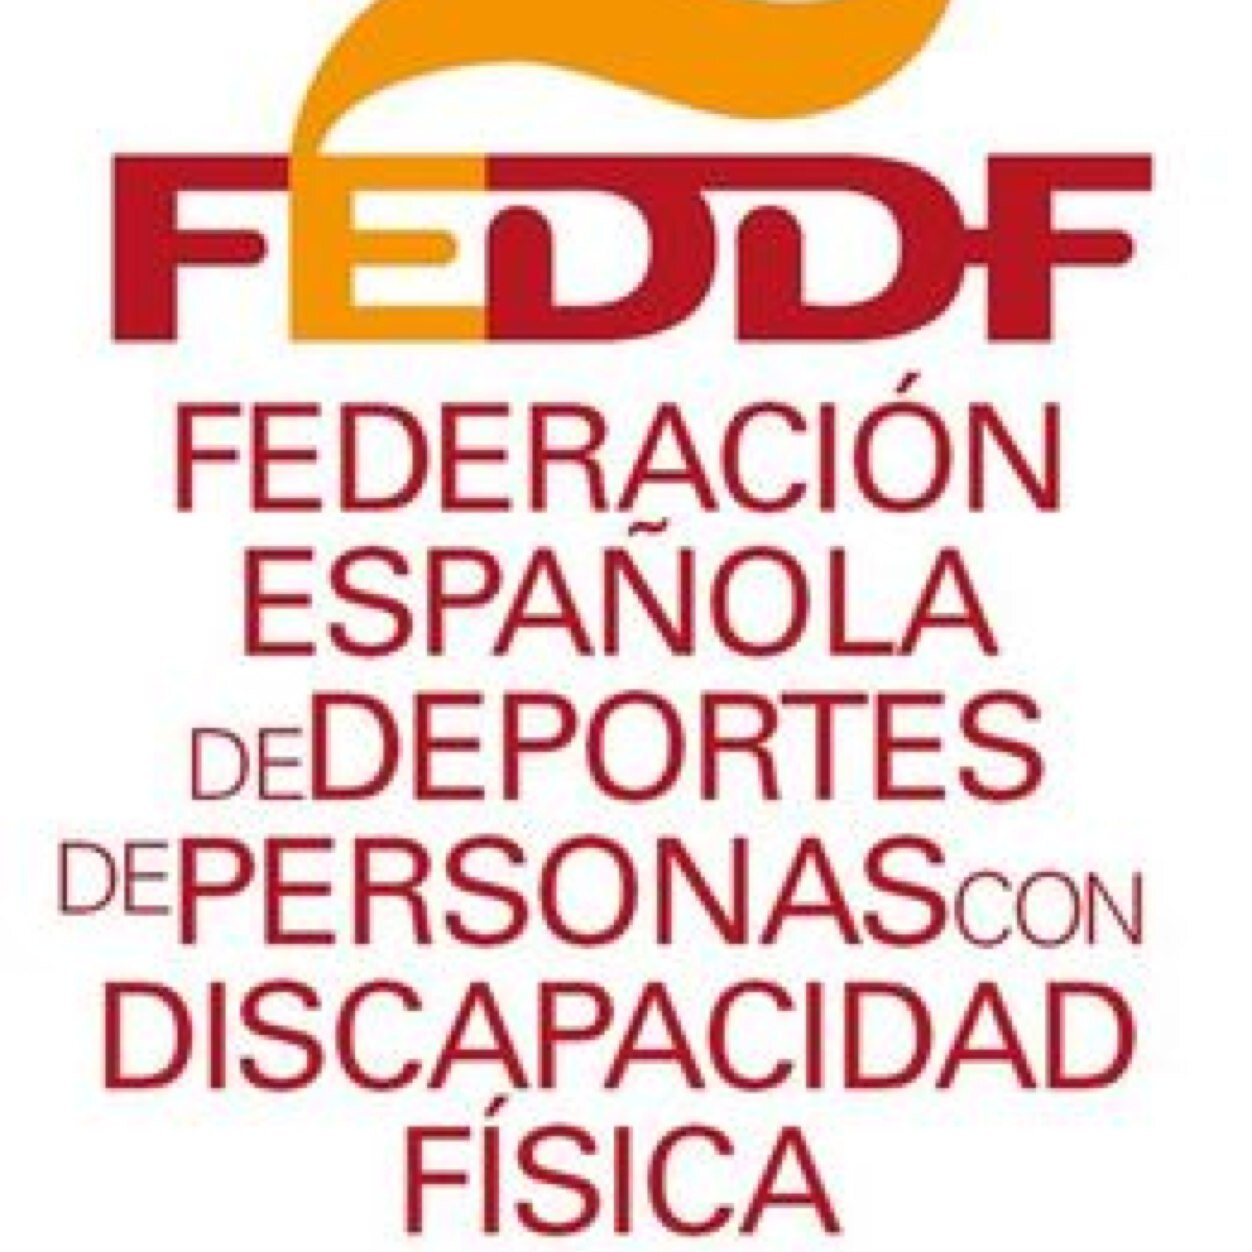 FEDDF